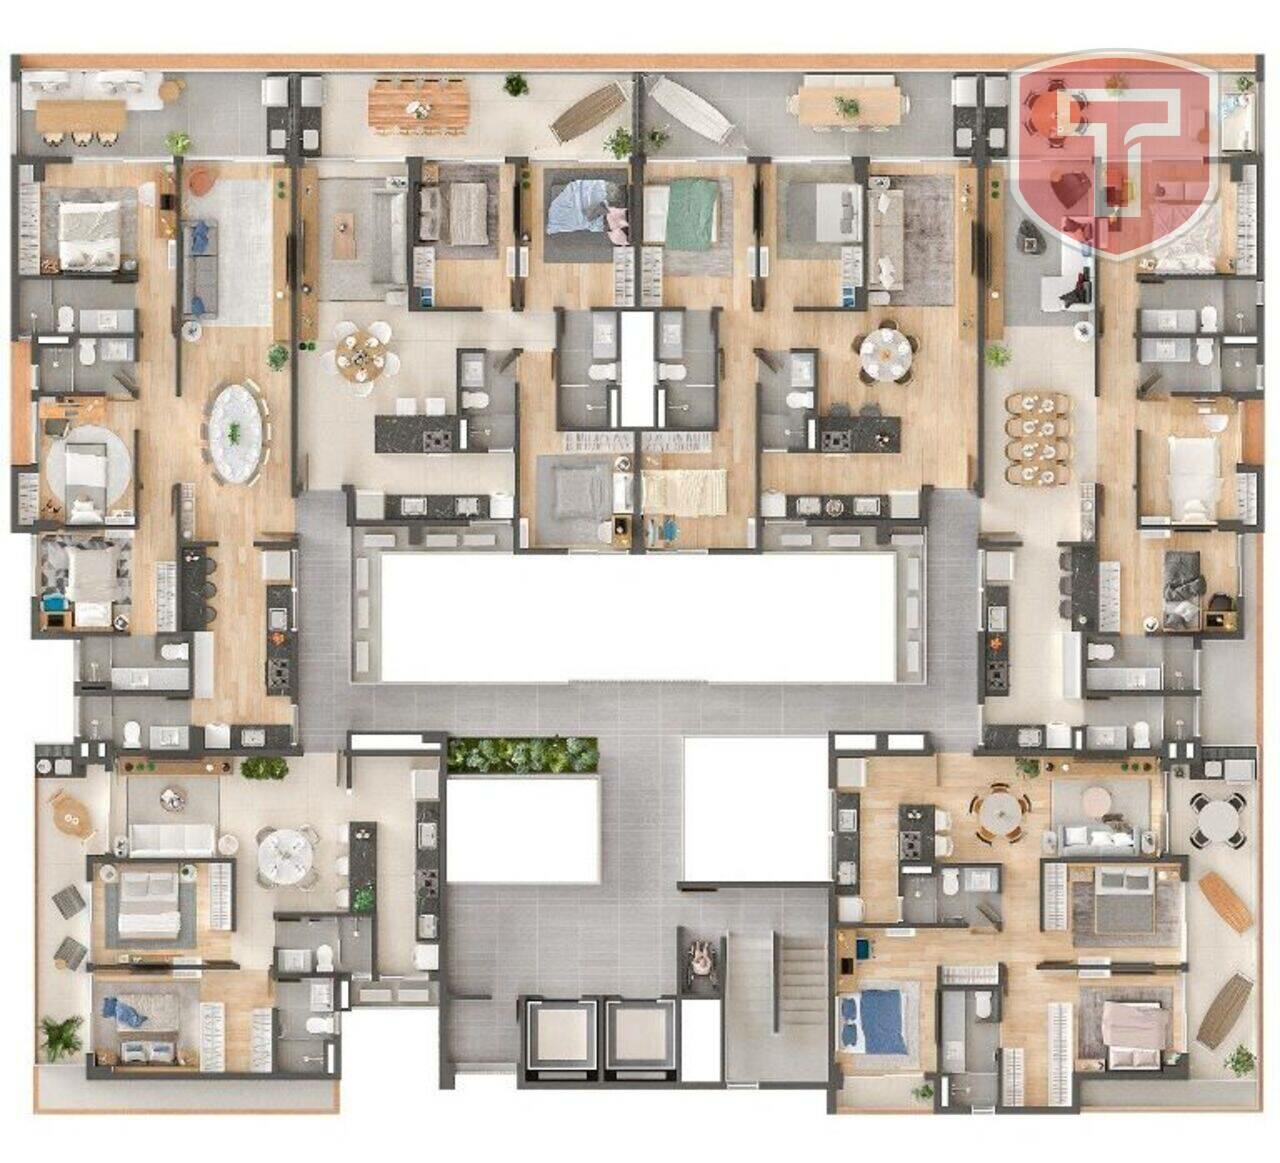 Costero - Apartamento com 3 quartos à venda - Intermares, Cabedelo/PB